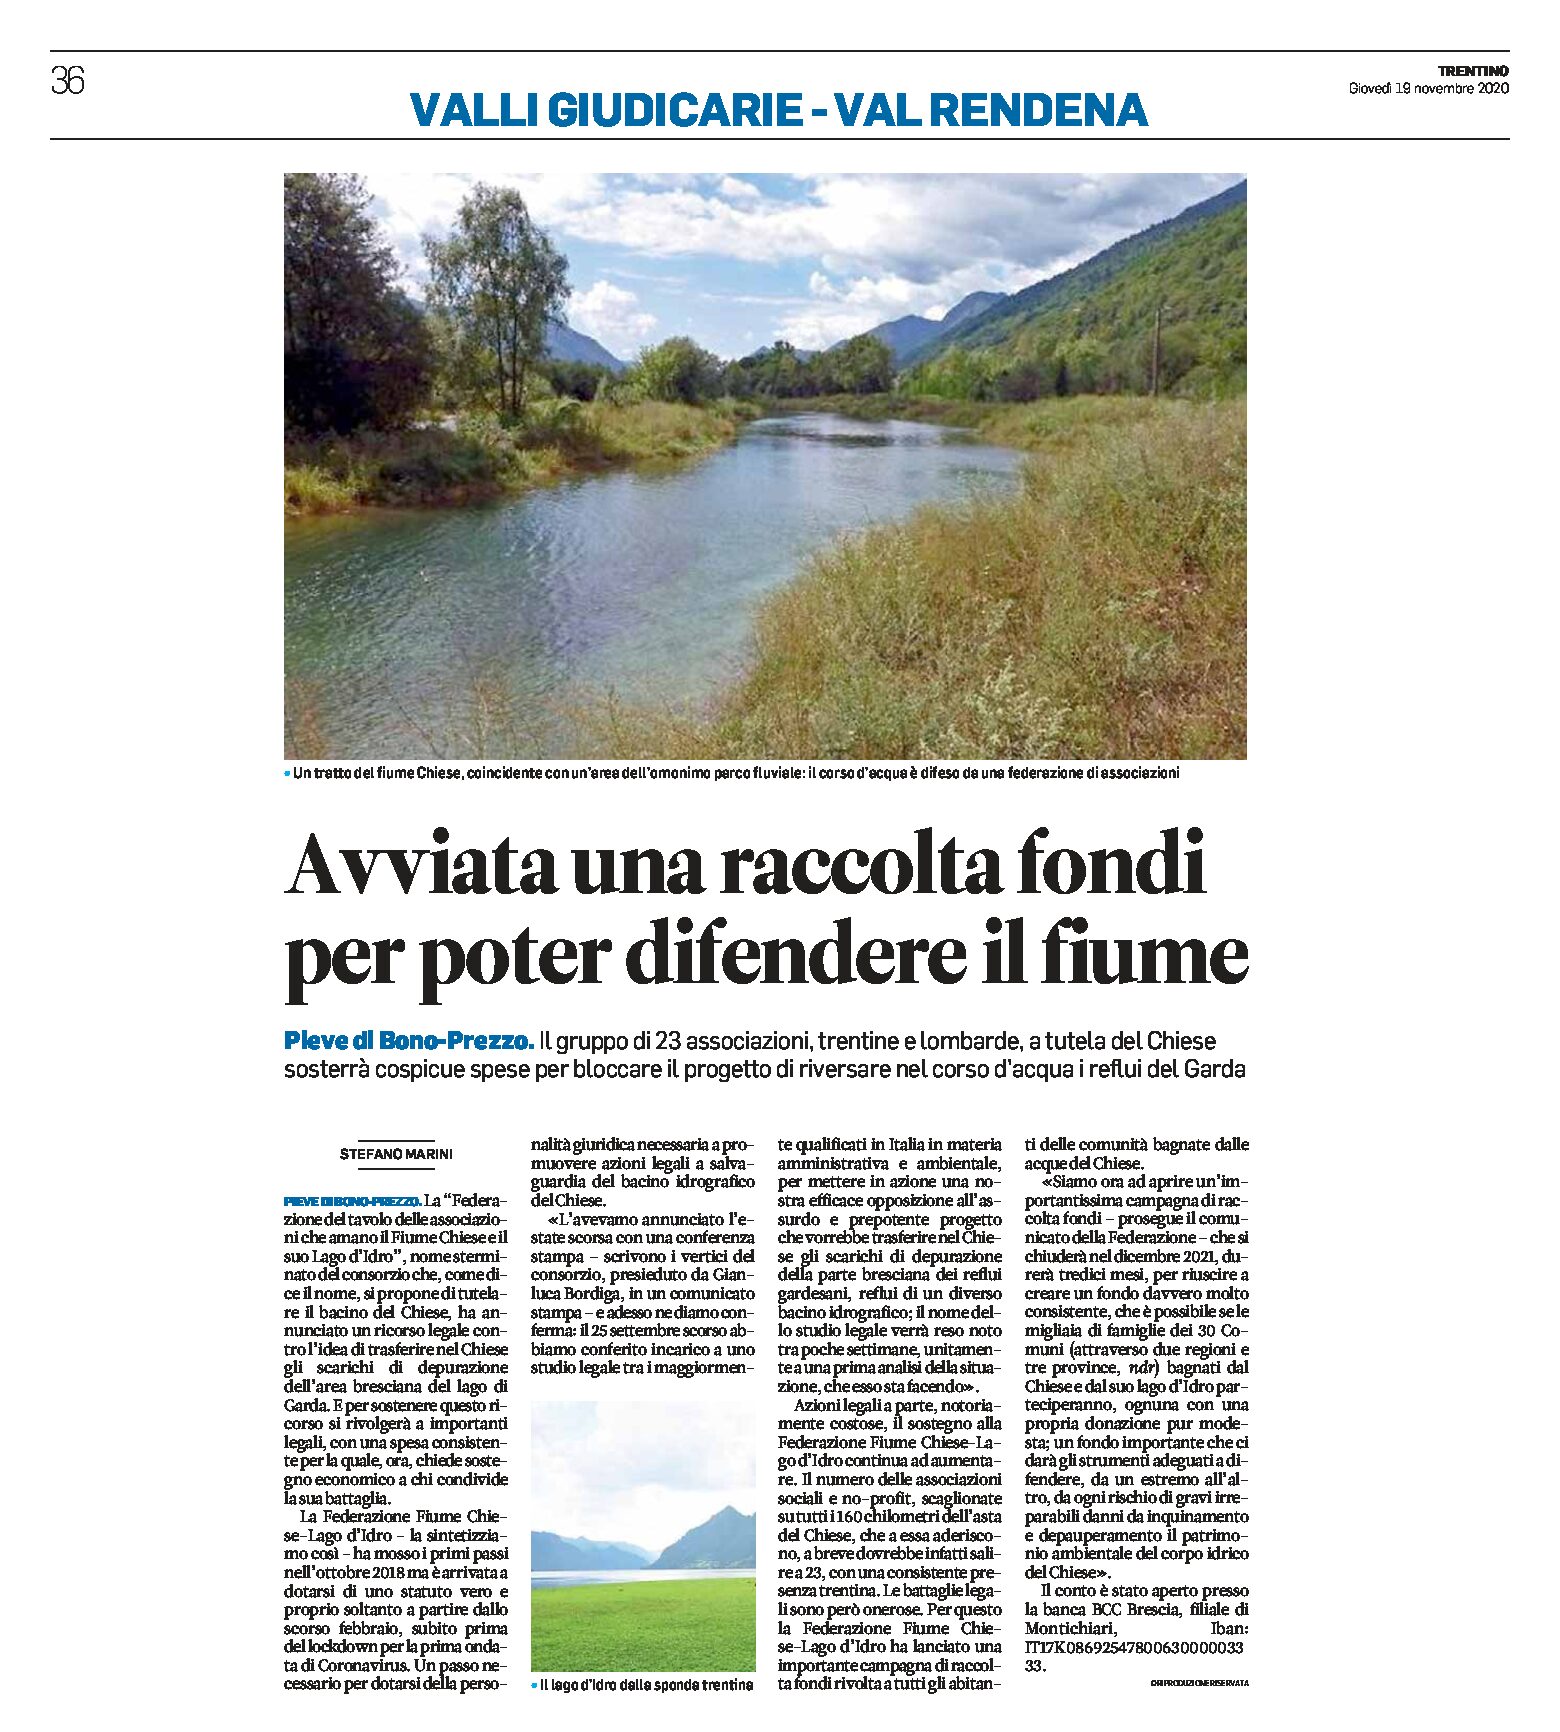 Chiese: avviata una raccolta fondi per poter difendere il fiume e il Lago d’Idro